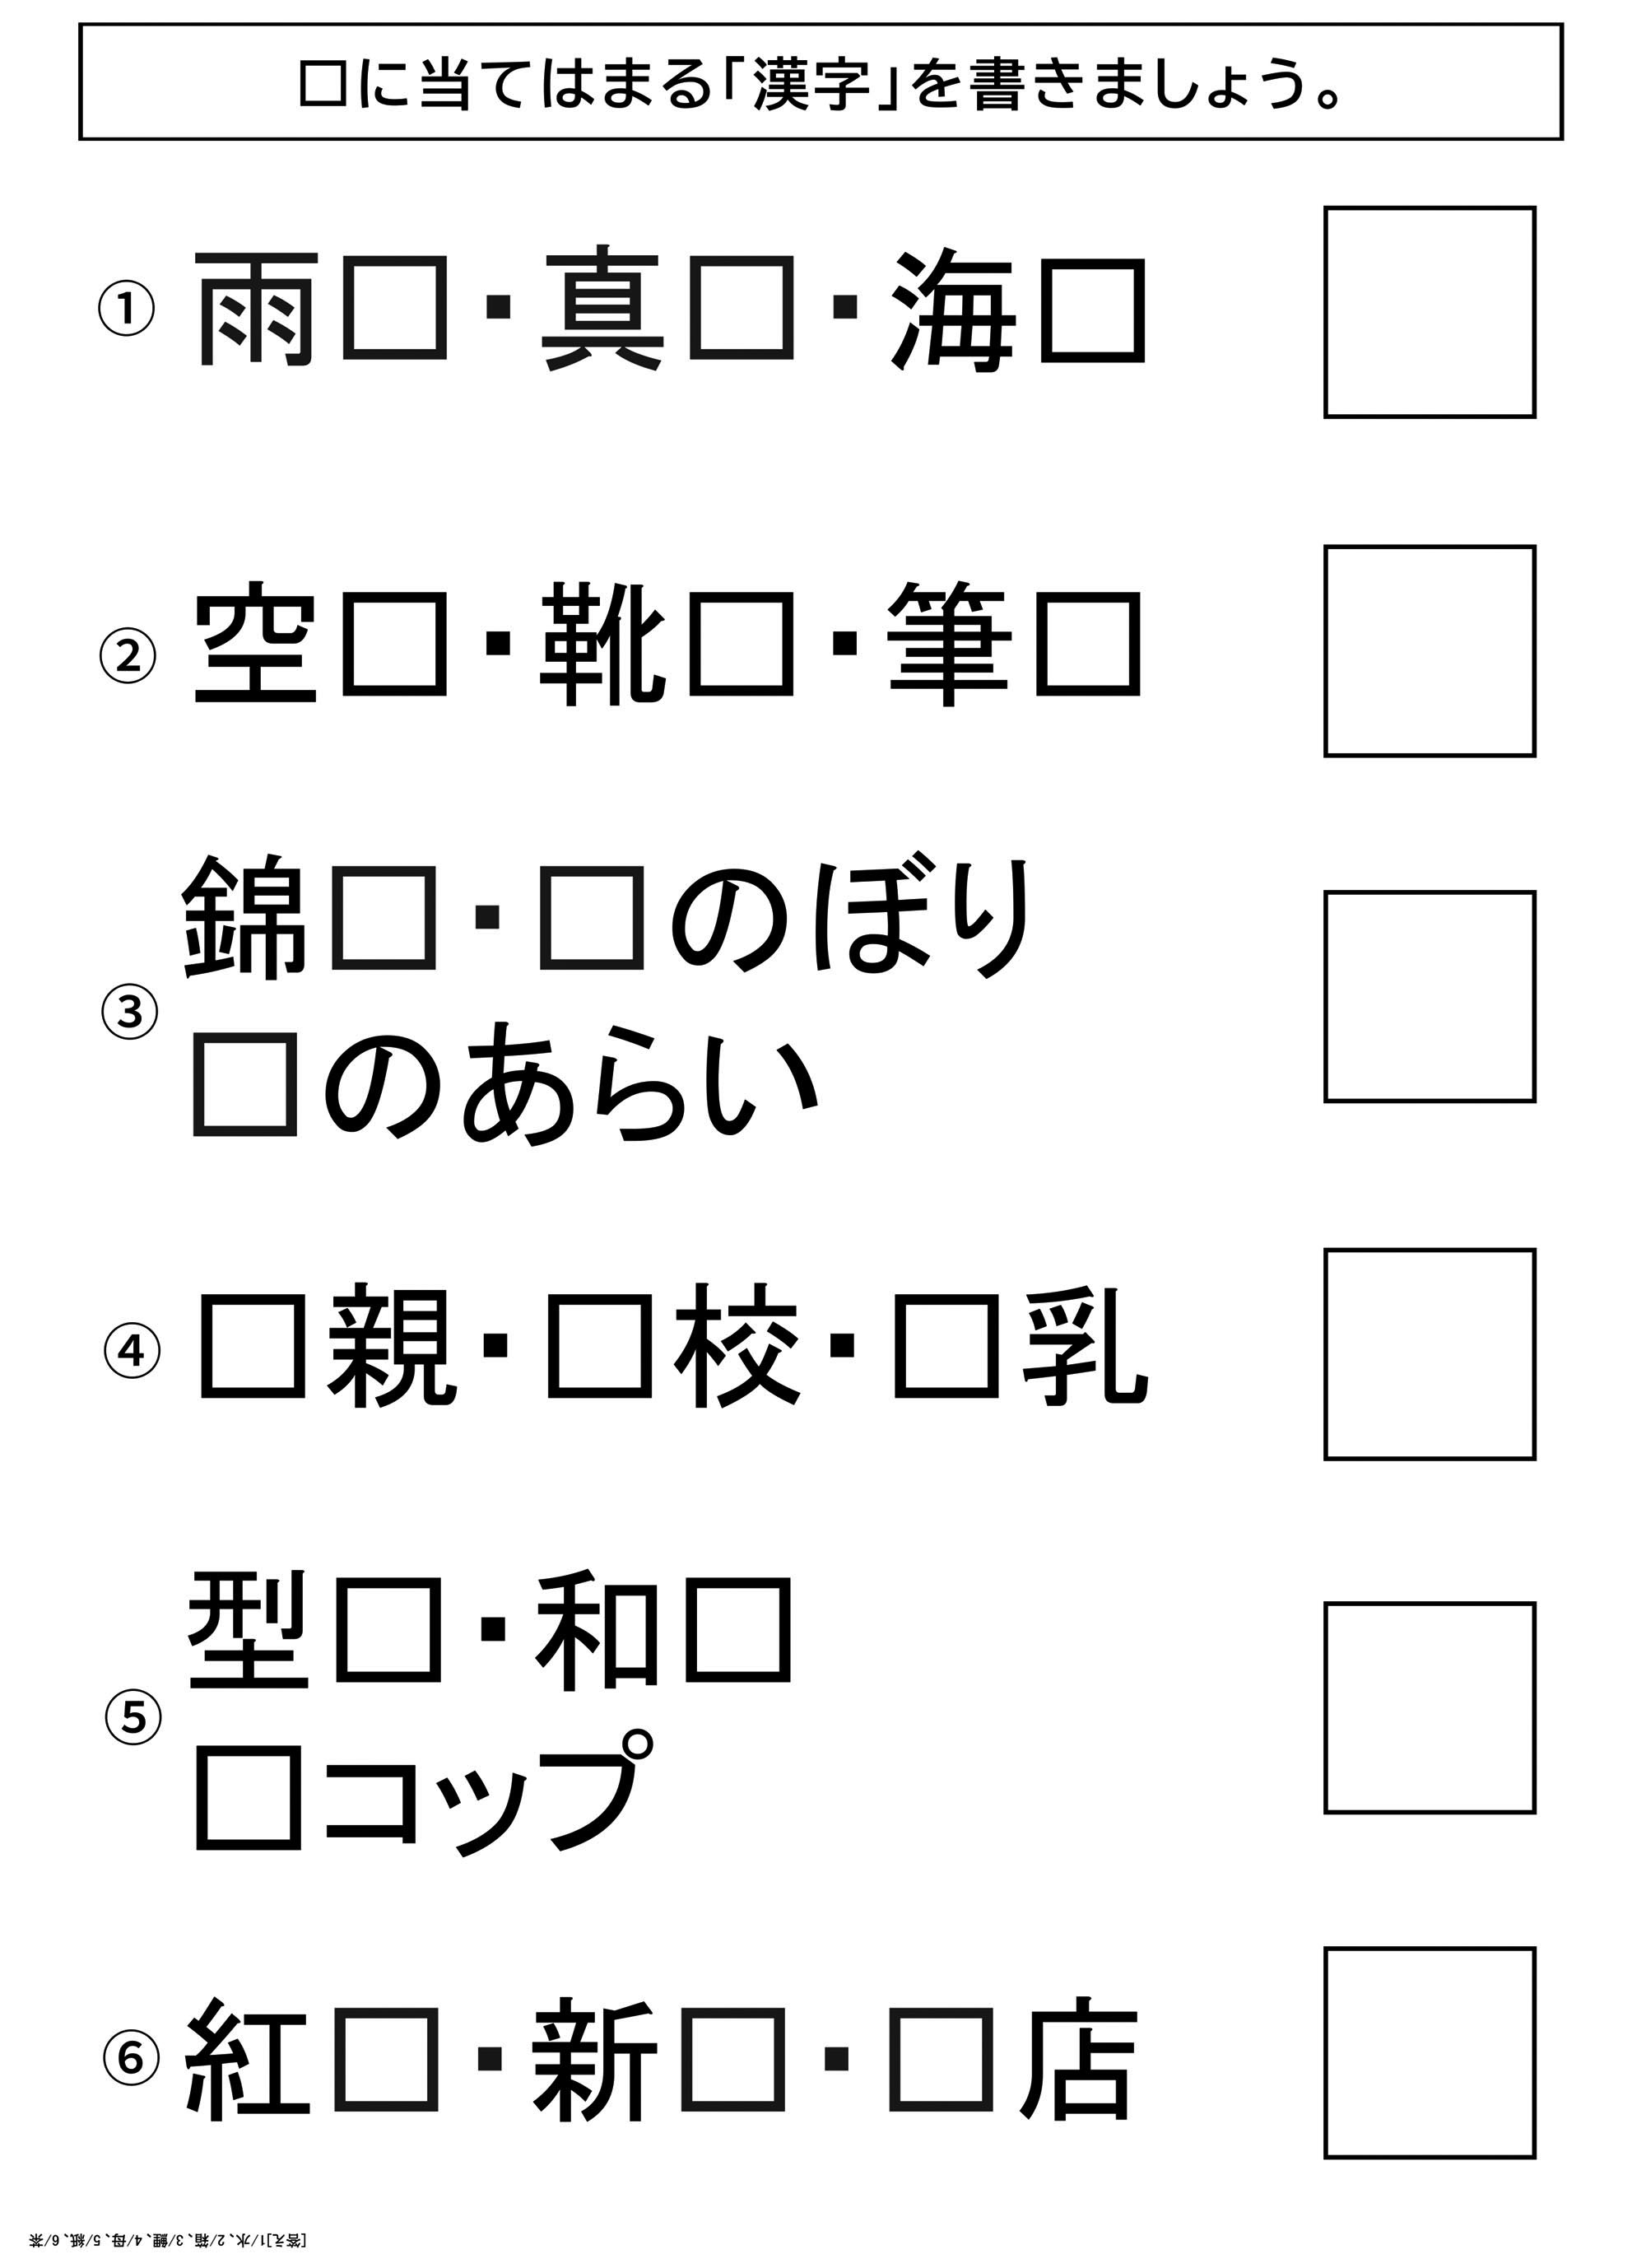 レク素材 漢字で穴埋めクイズ 介護レク広場 レク素材やレクネタ 企画書 の無料ダウンロード